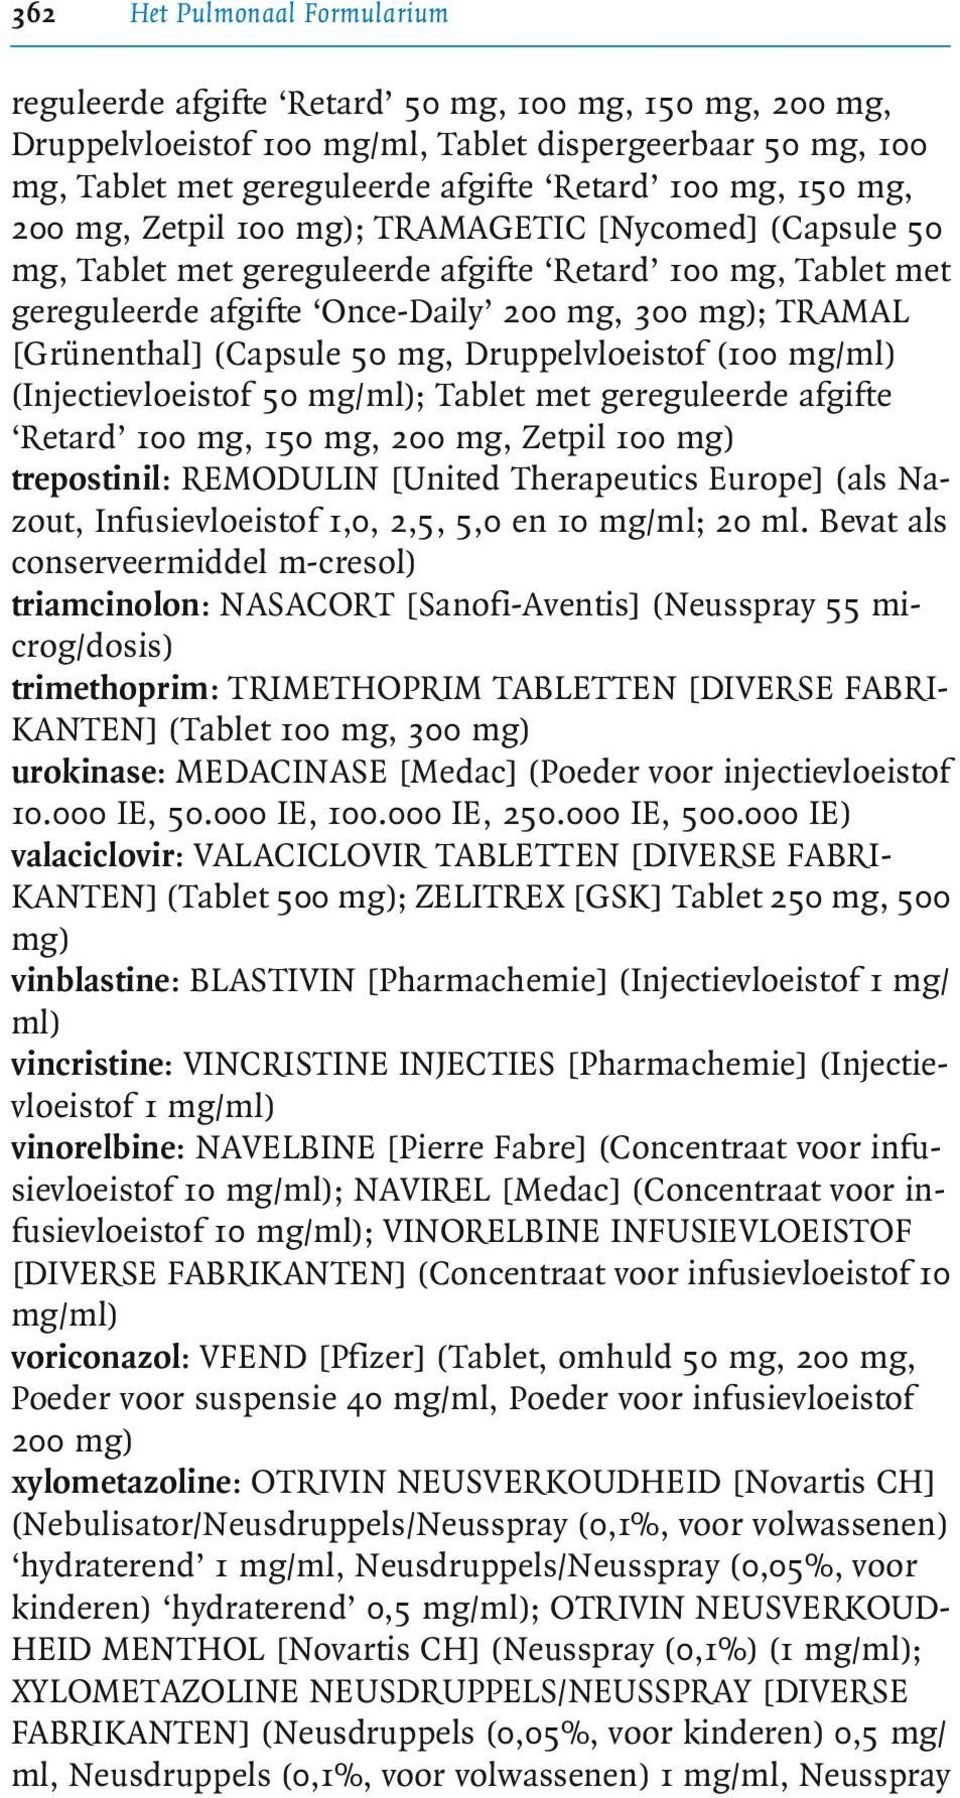 (Capsule 50 mg, Druppelvloeistof (100 mg/ml) (Injectievloeistof 50 mg/ml); Tablet met gereguleerde afgifte Retard 100mg,150mg,200mg,Zetpil100mg) trepostinil: REMODULIN [United Therapeutics Europe]